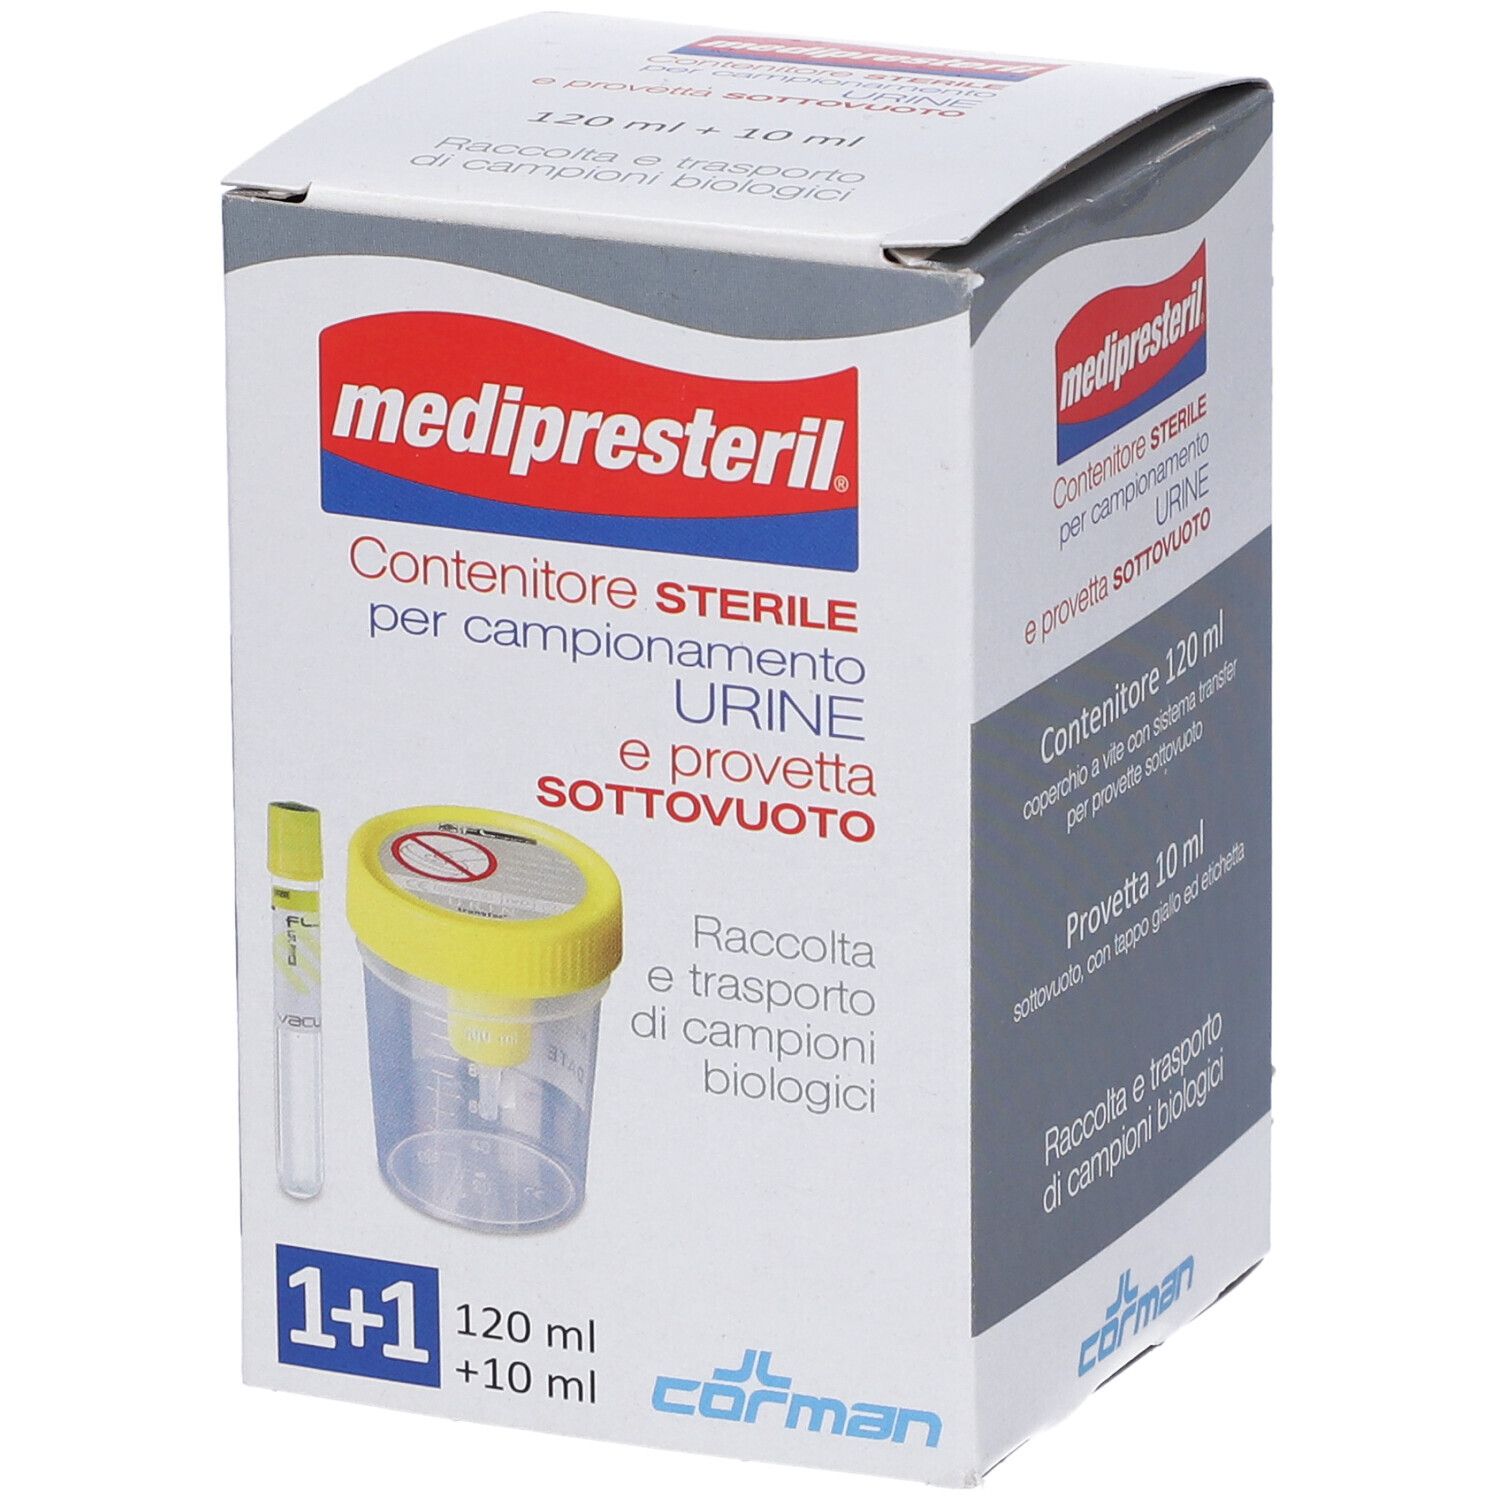 Contenitore Urina + Provetta Medipresteril